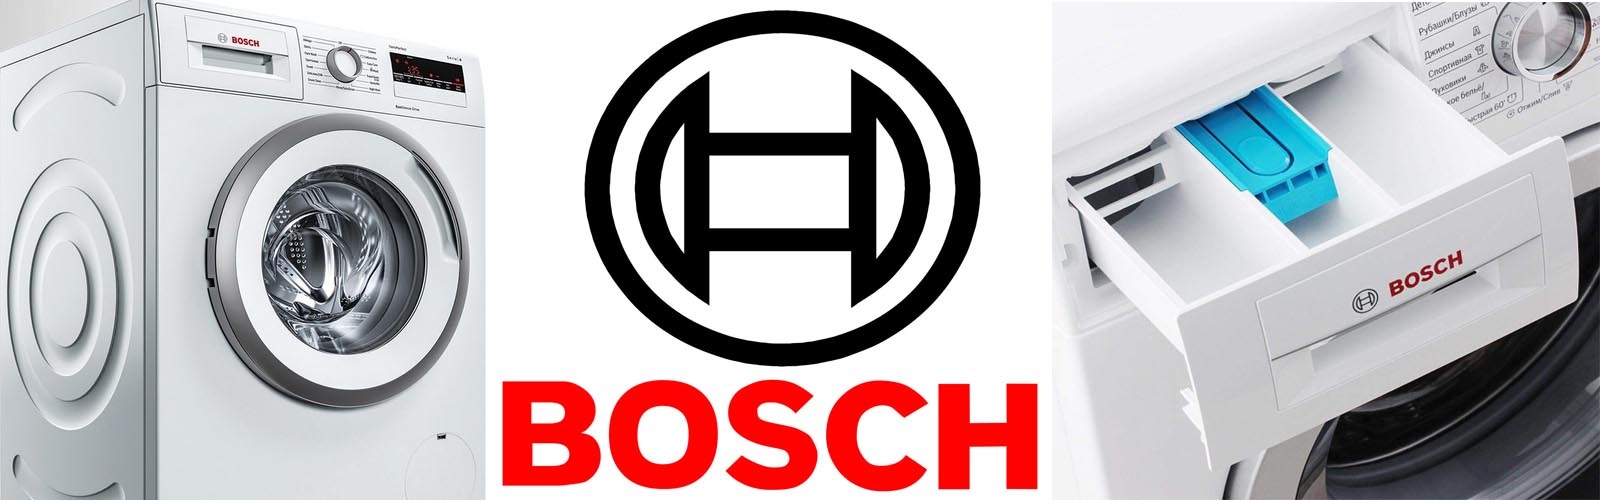 dlaczego Bosch jest tak popularny